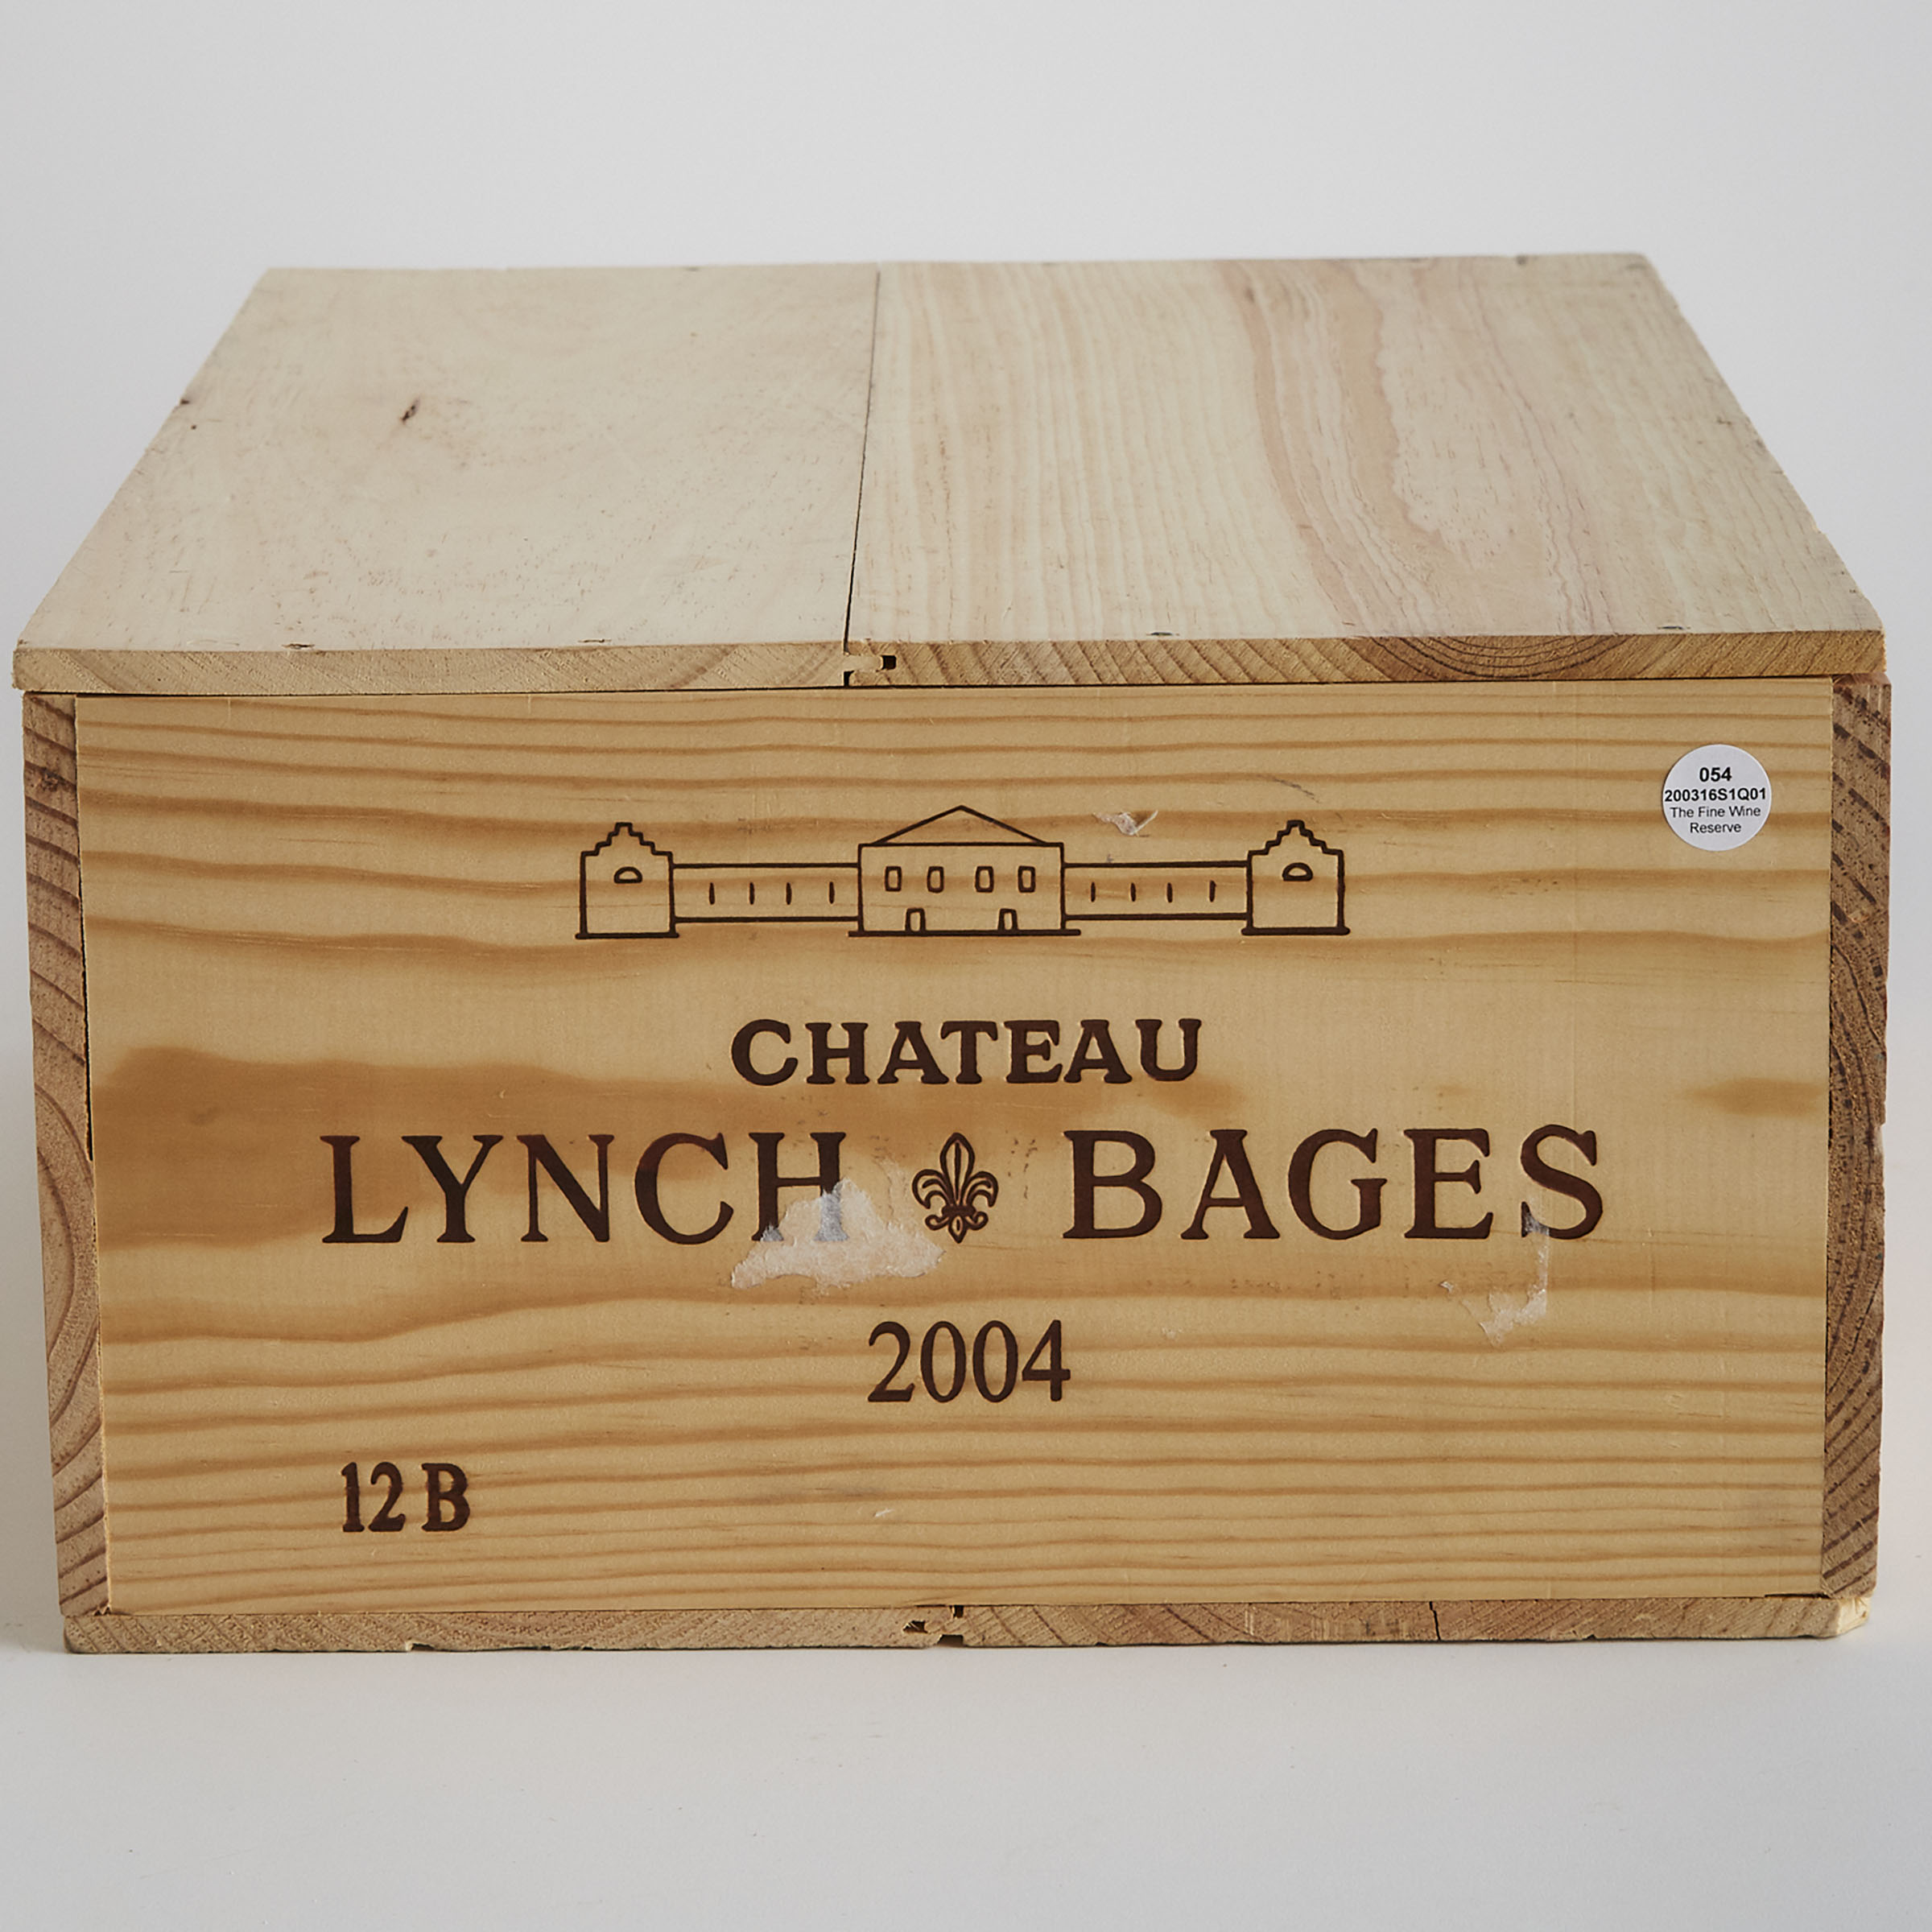 CHÂTEAU LYNCH-BAGES 2004 (12, OWC)